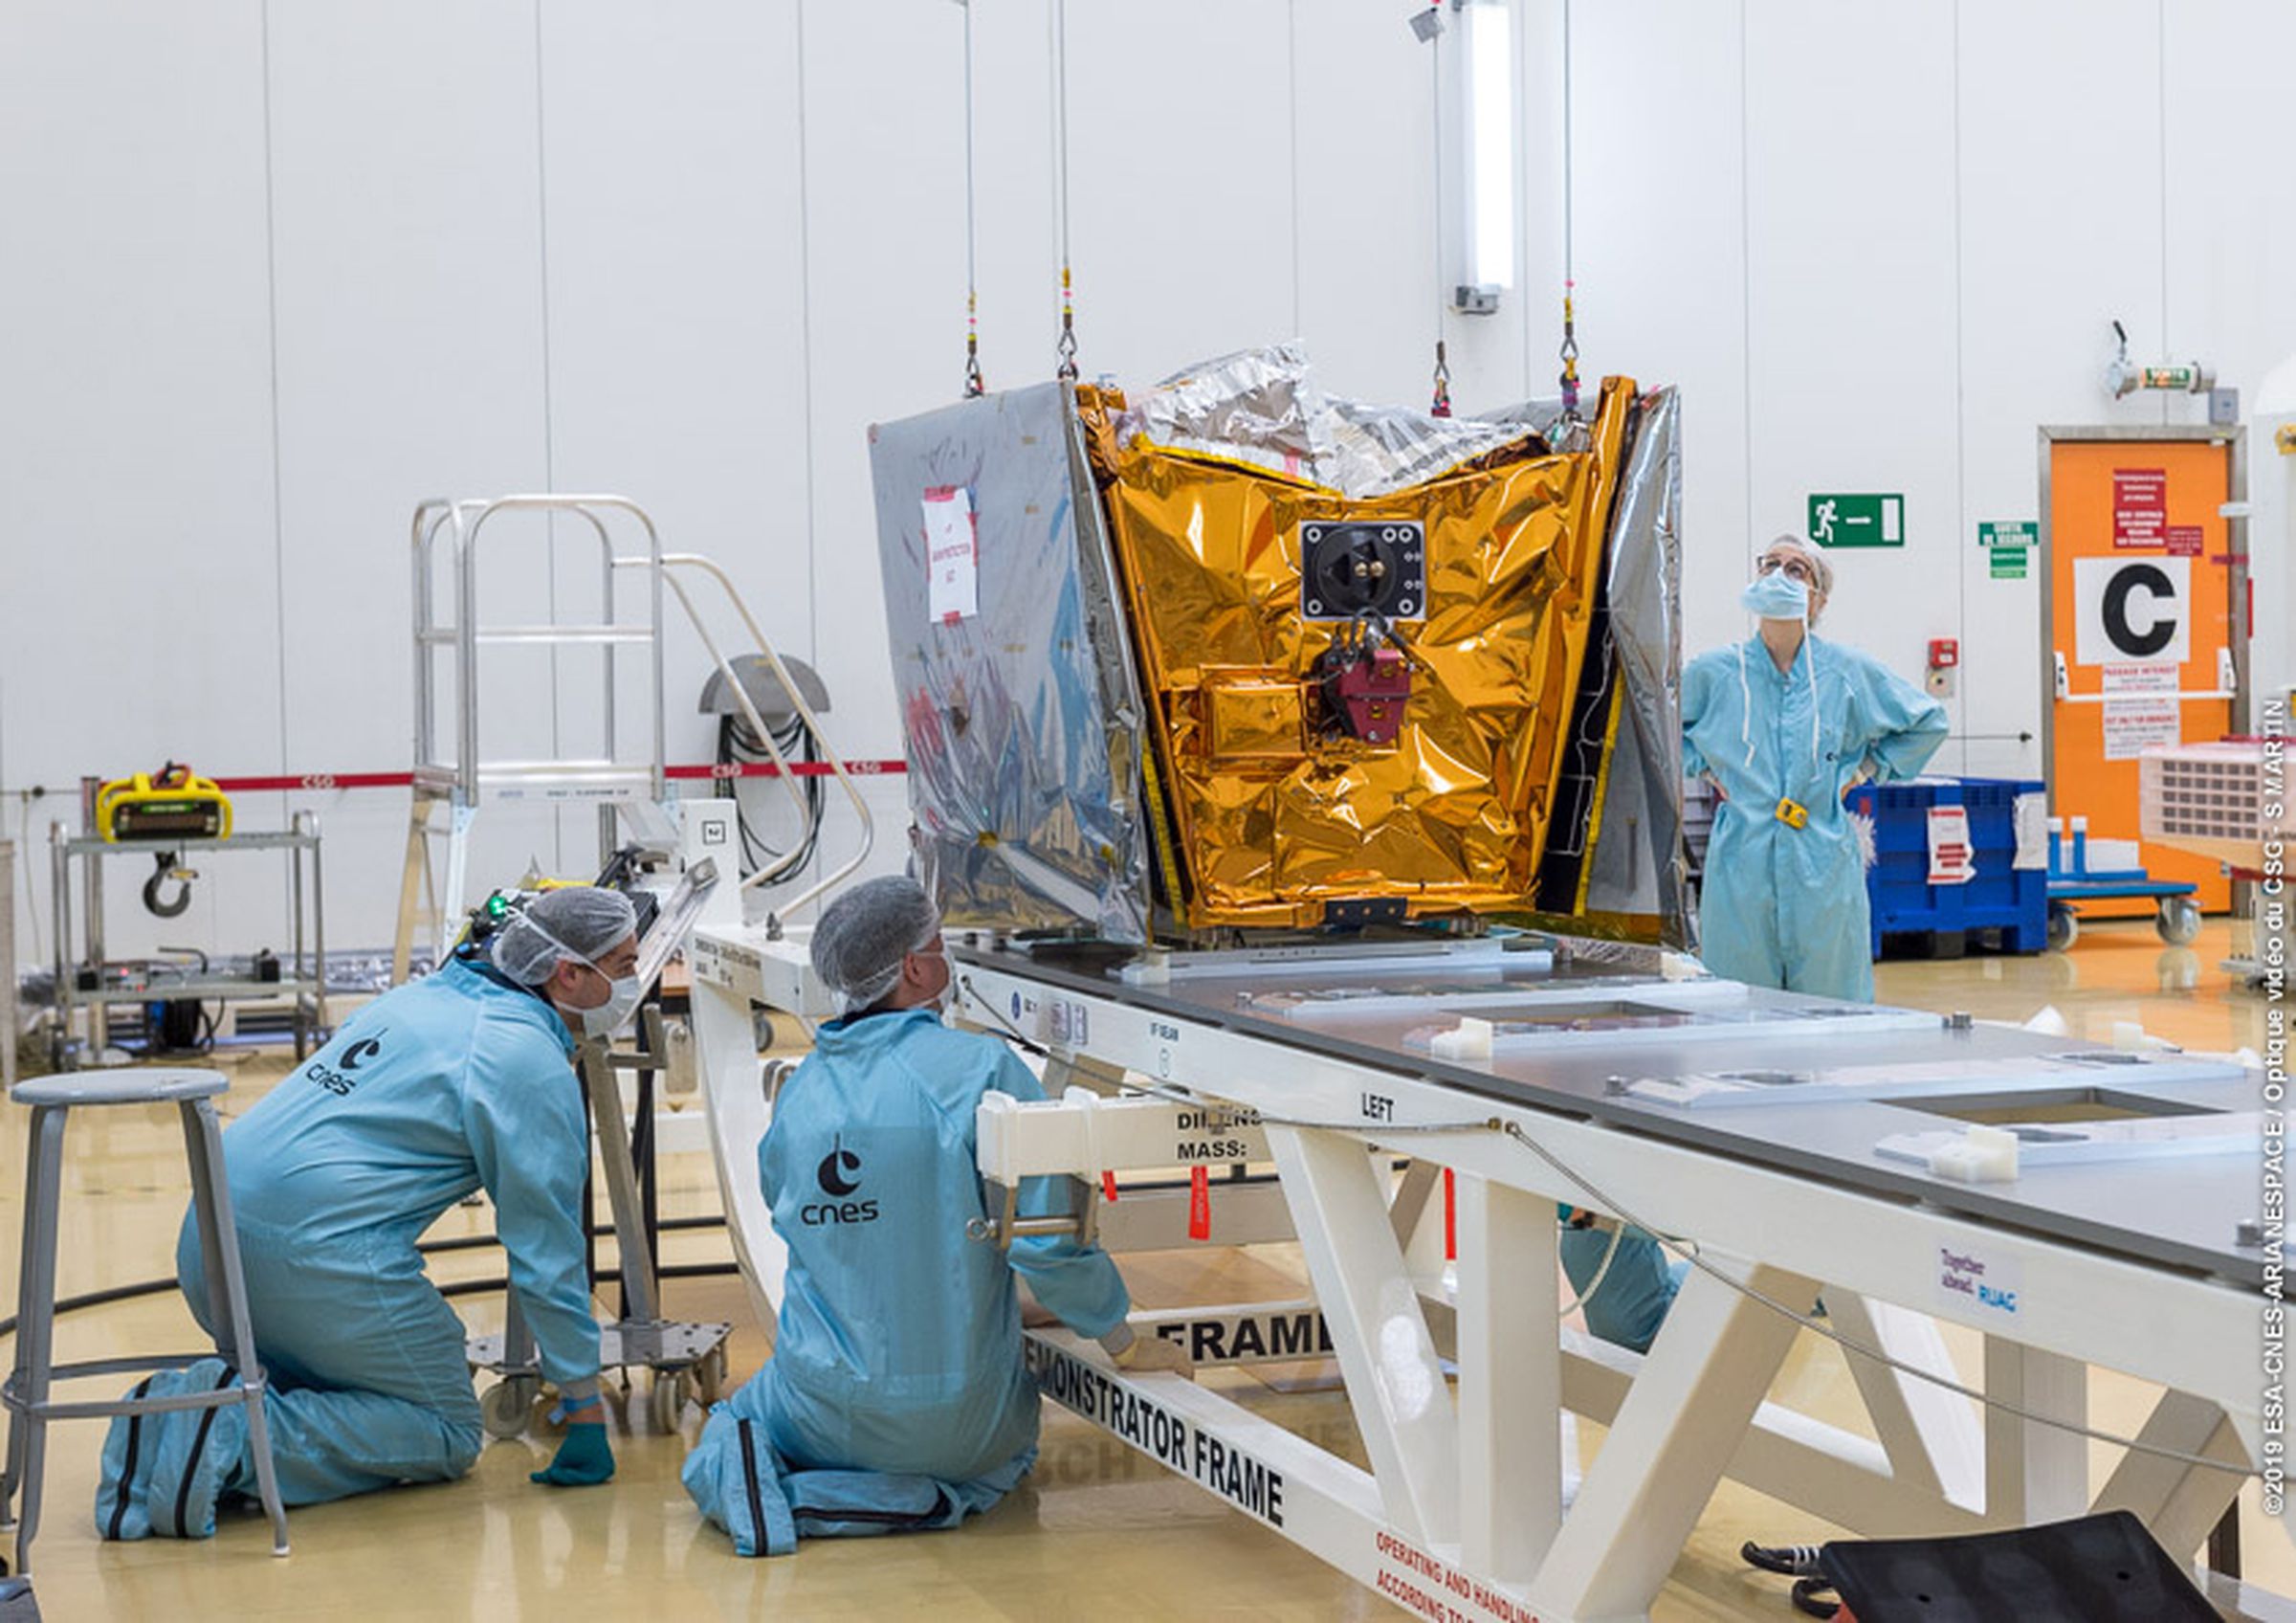 One of the six OneWeb satellites launching on Wednesday